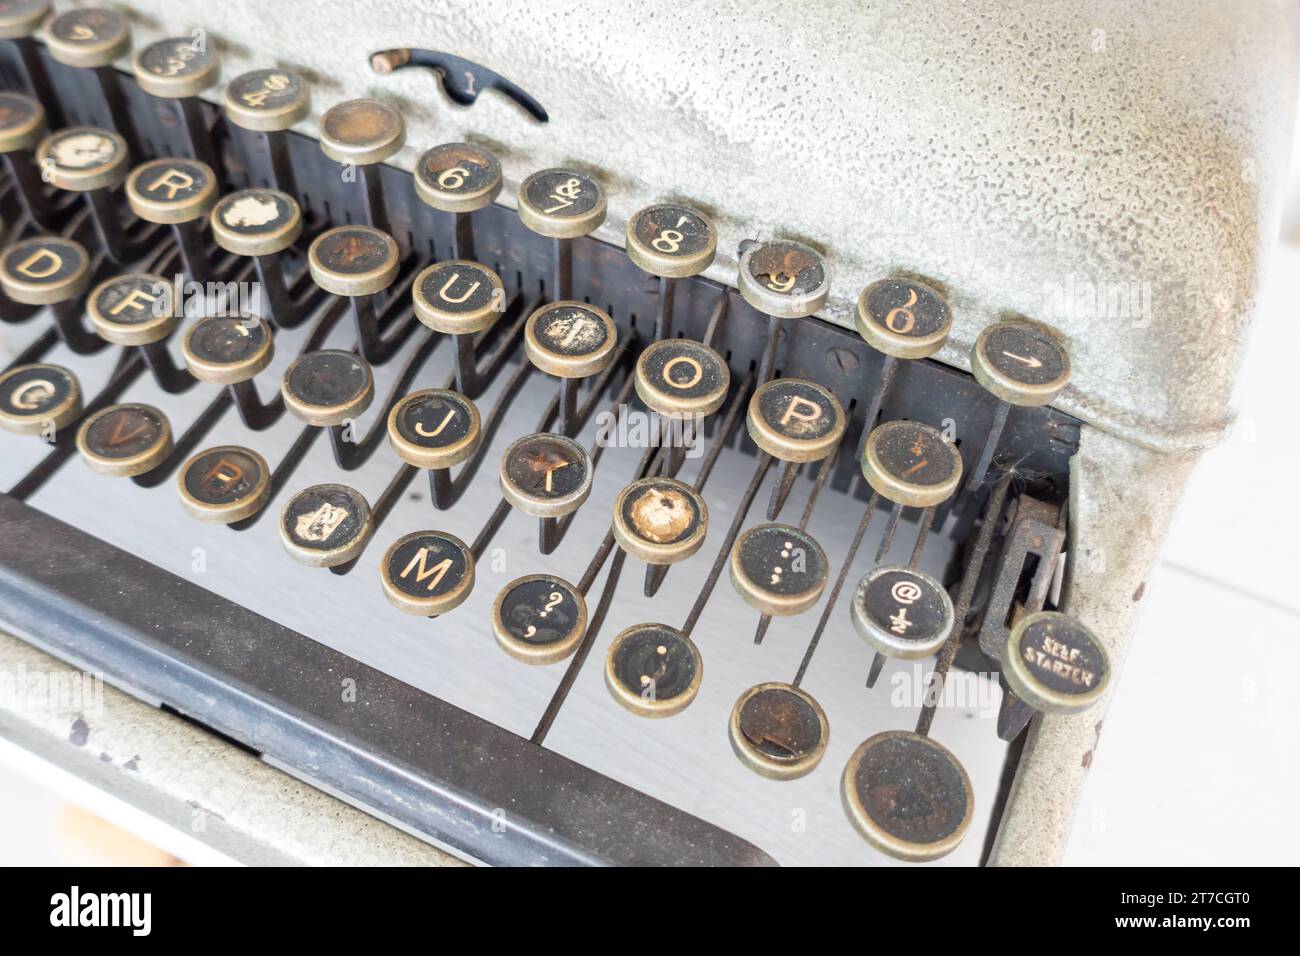 Machines à écrire utilisées au cours des trente dernières années ou plus. Avant que l'ordinateur n'entre en jeu dans la vie quotidienne Banque D'Images